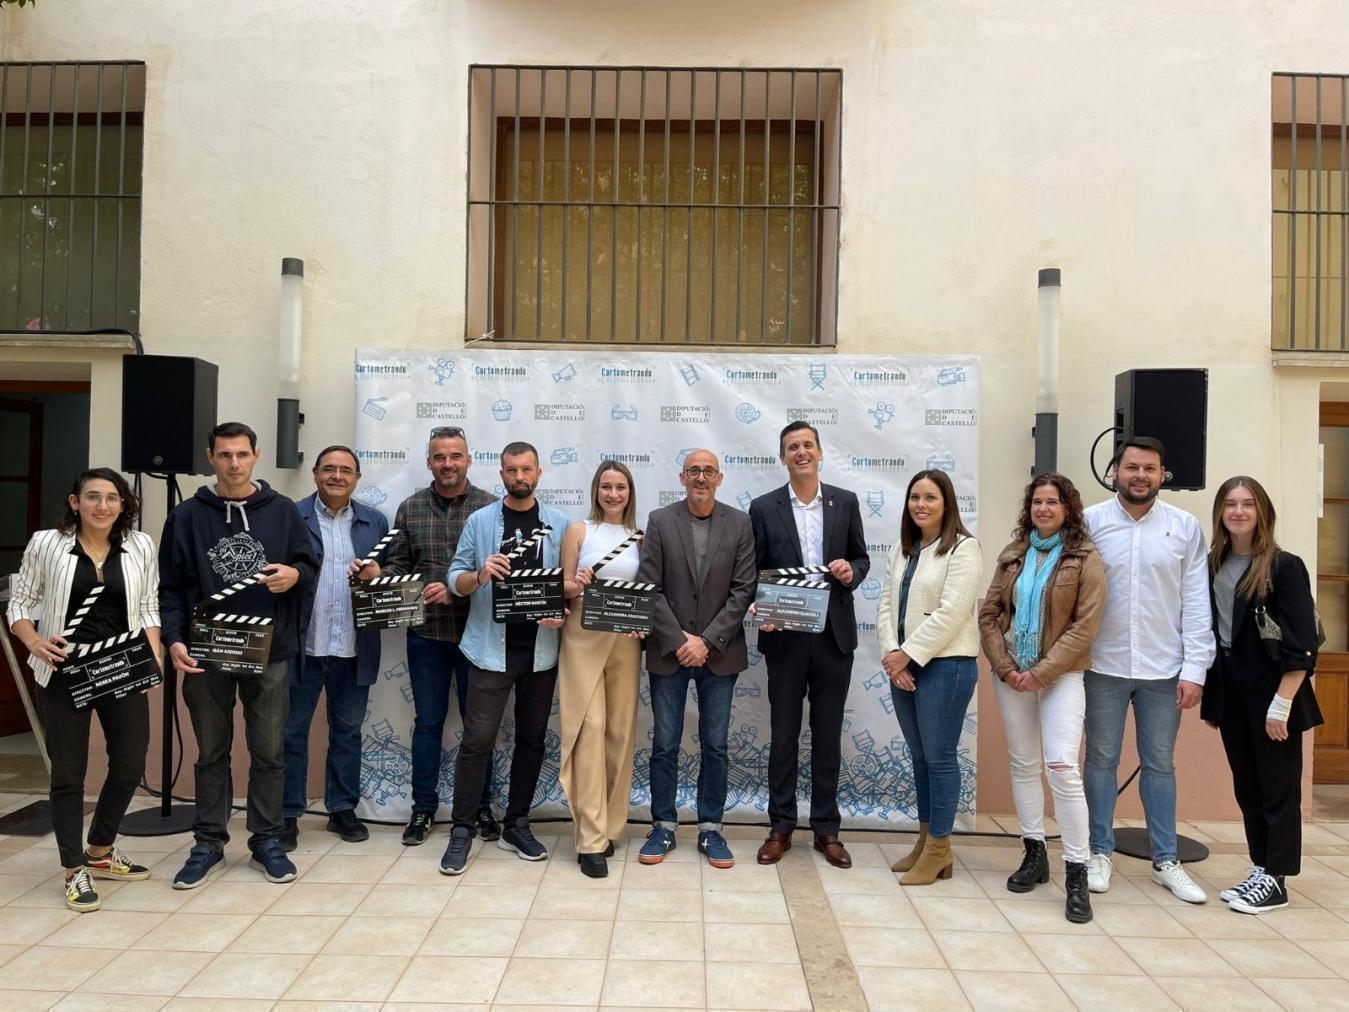 La Diputación de Castellón reivindica el talento del séptimo arte de la provincia con una nueva edición del festival ‘Cortometrando’